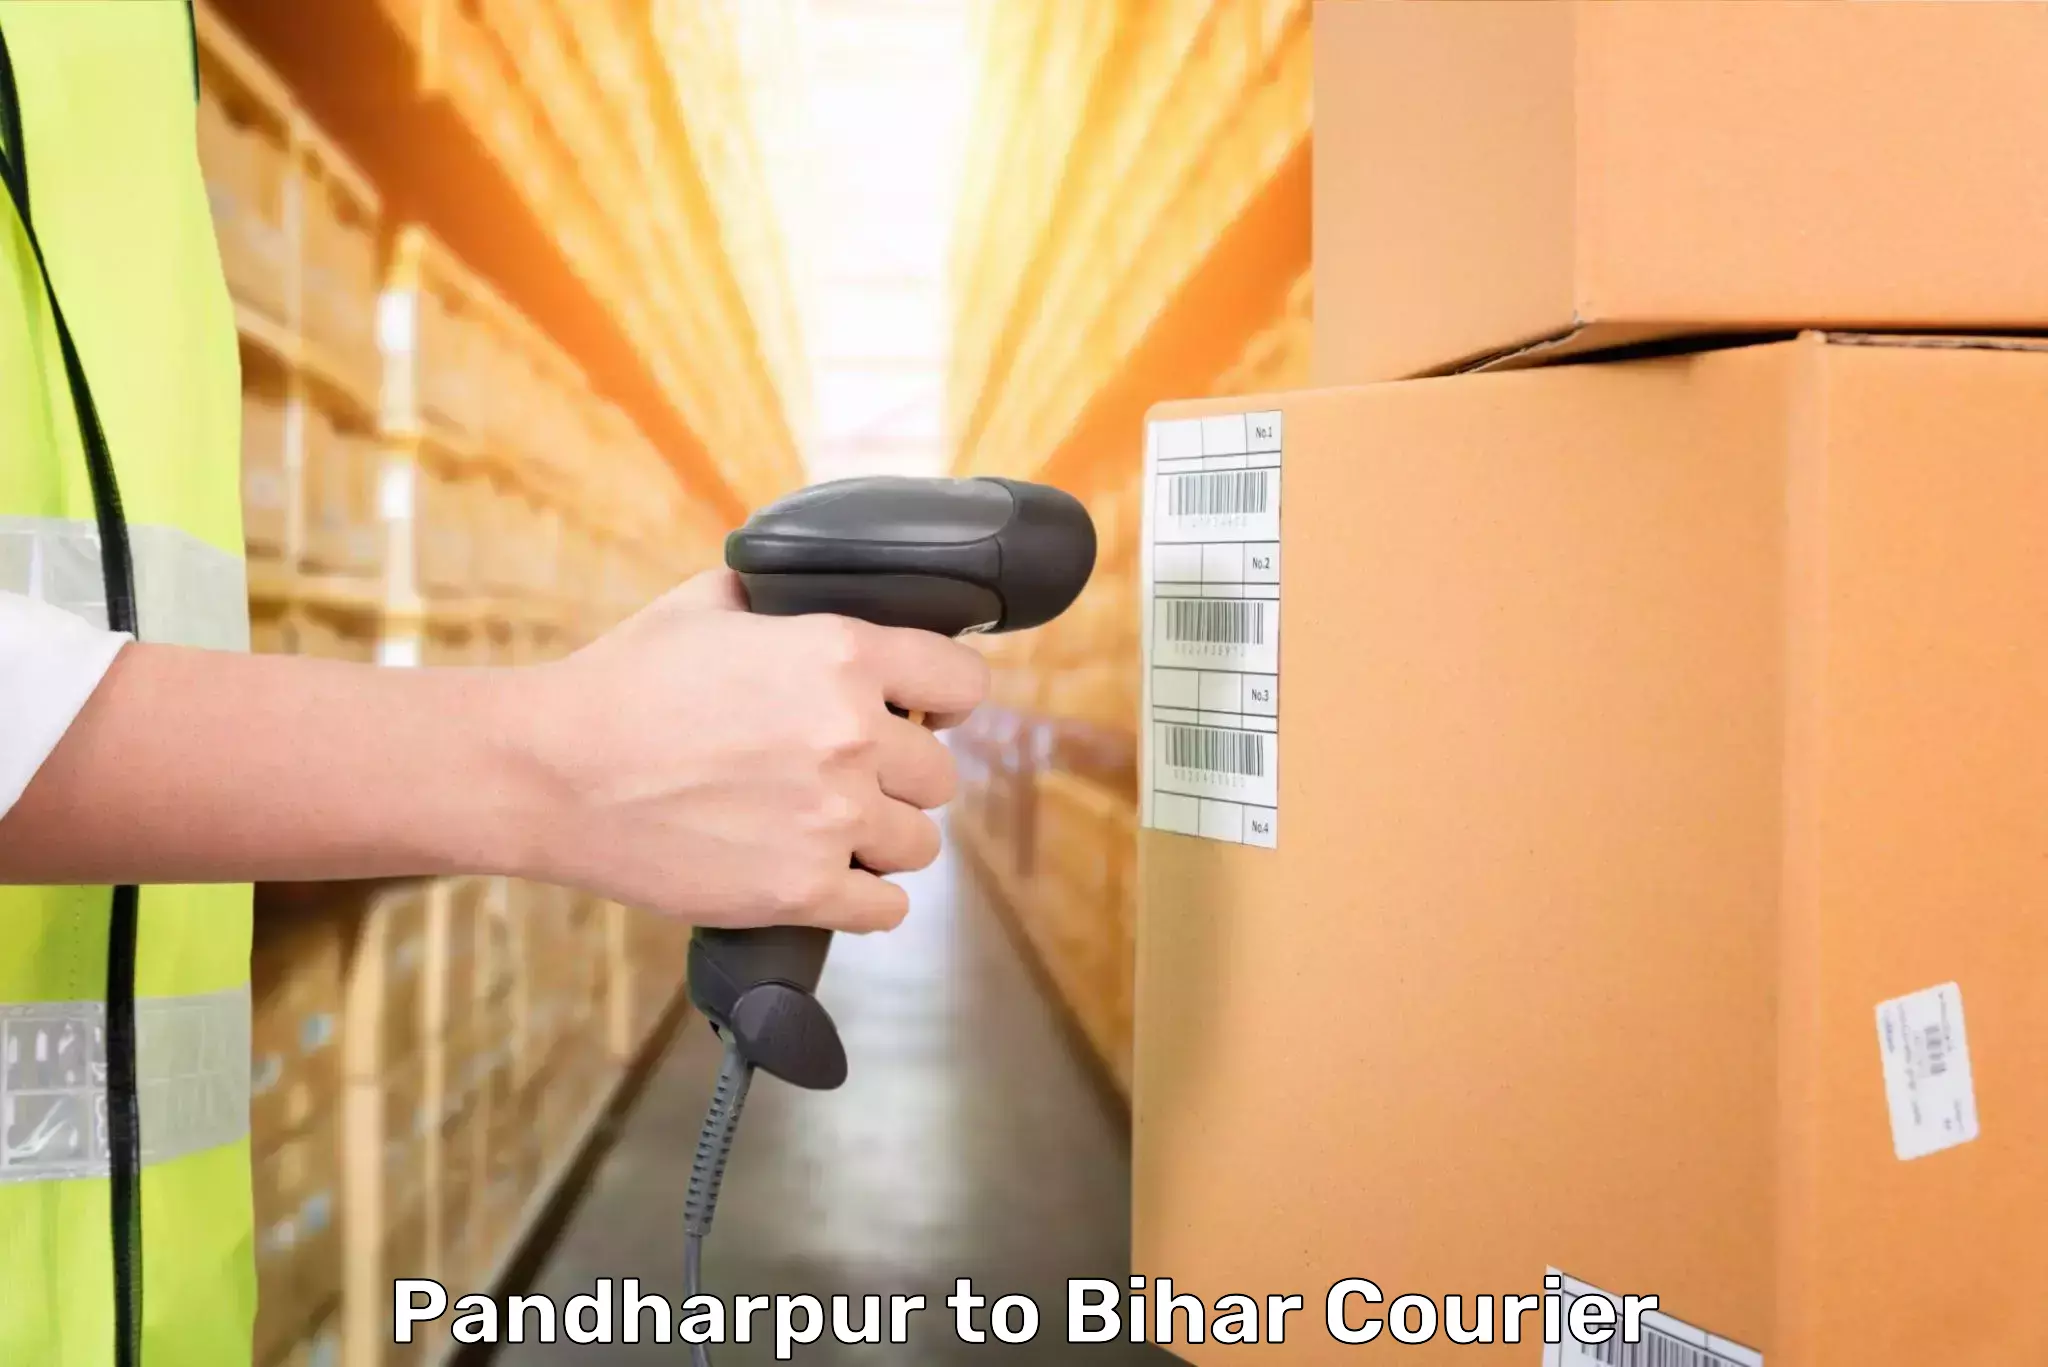 Luggage transport deals Pandharpur to Dighwara